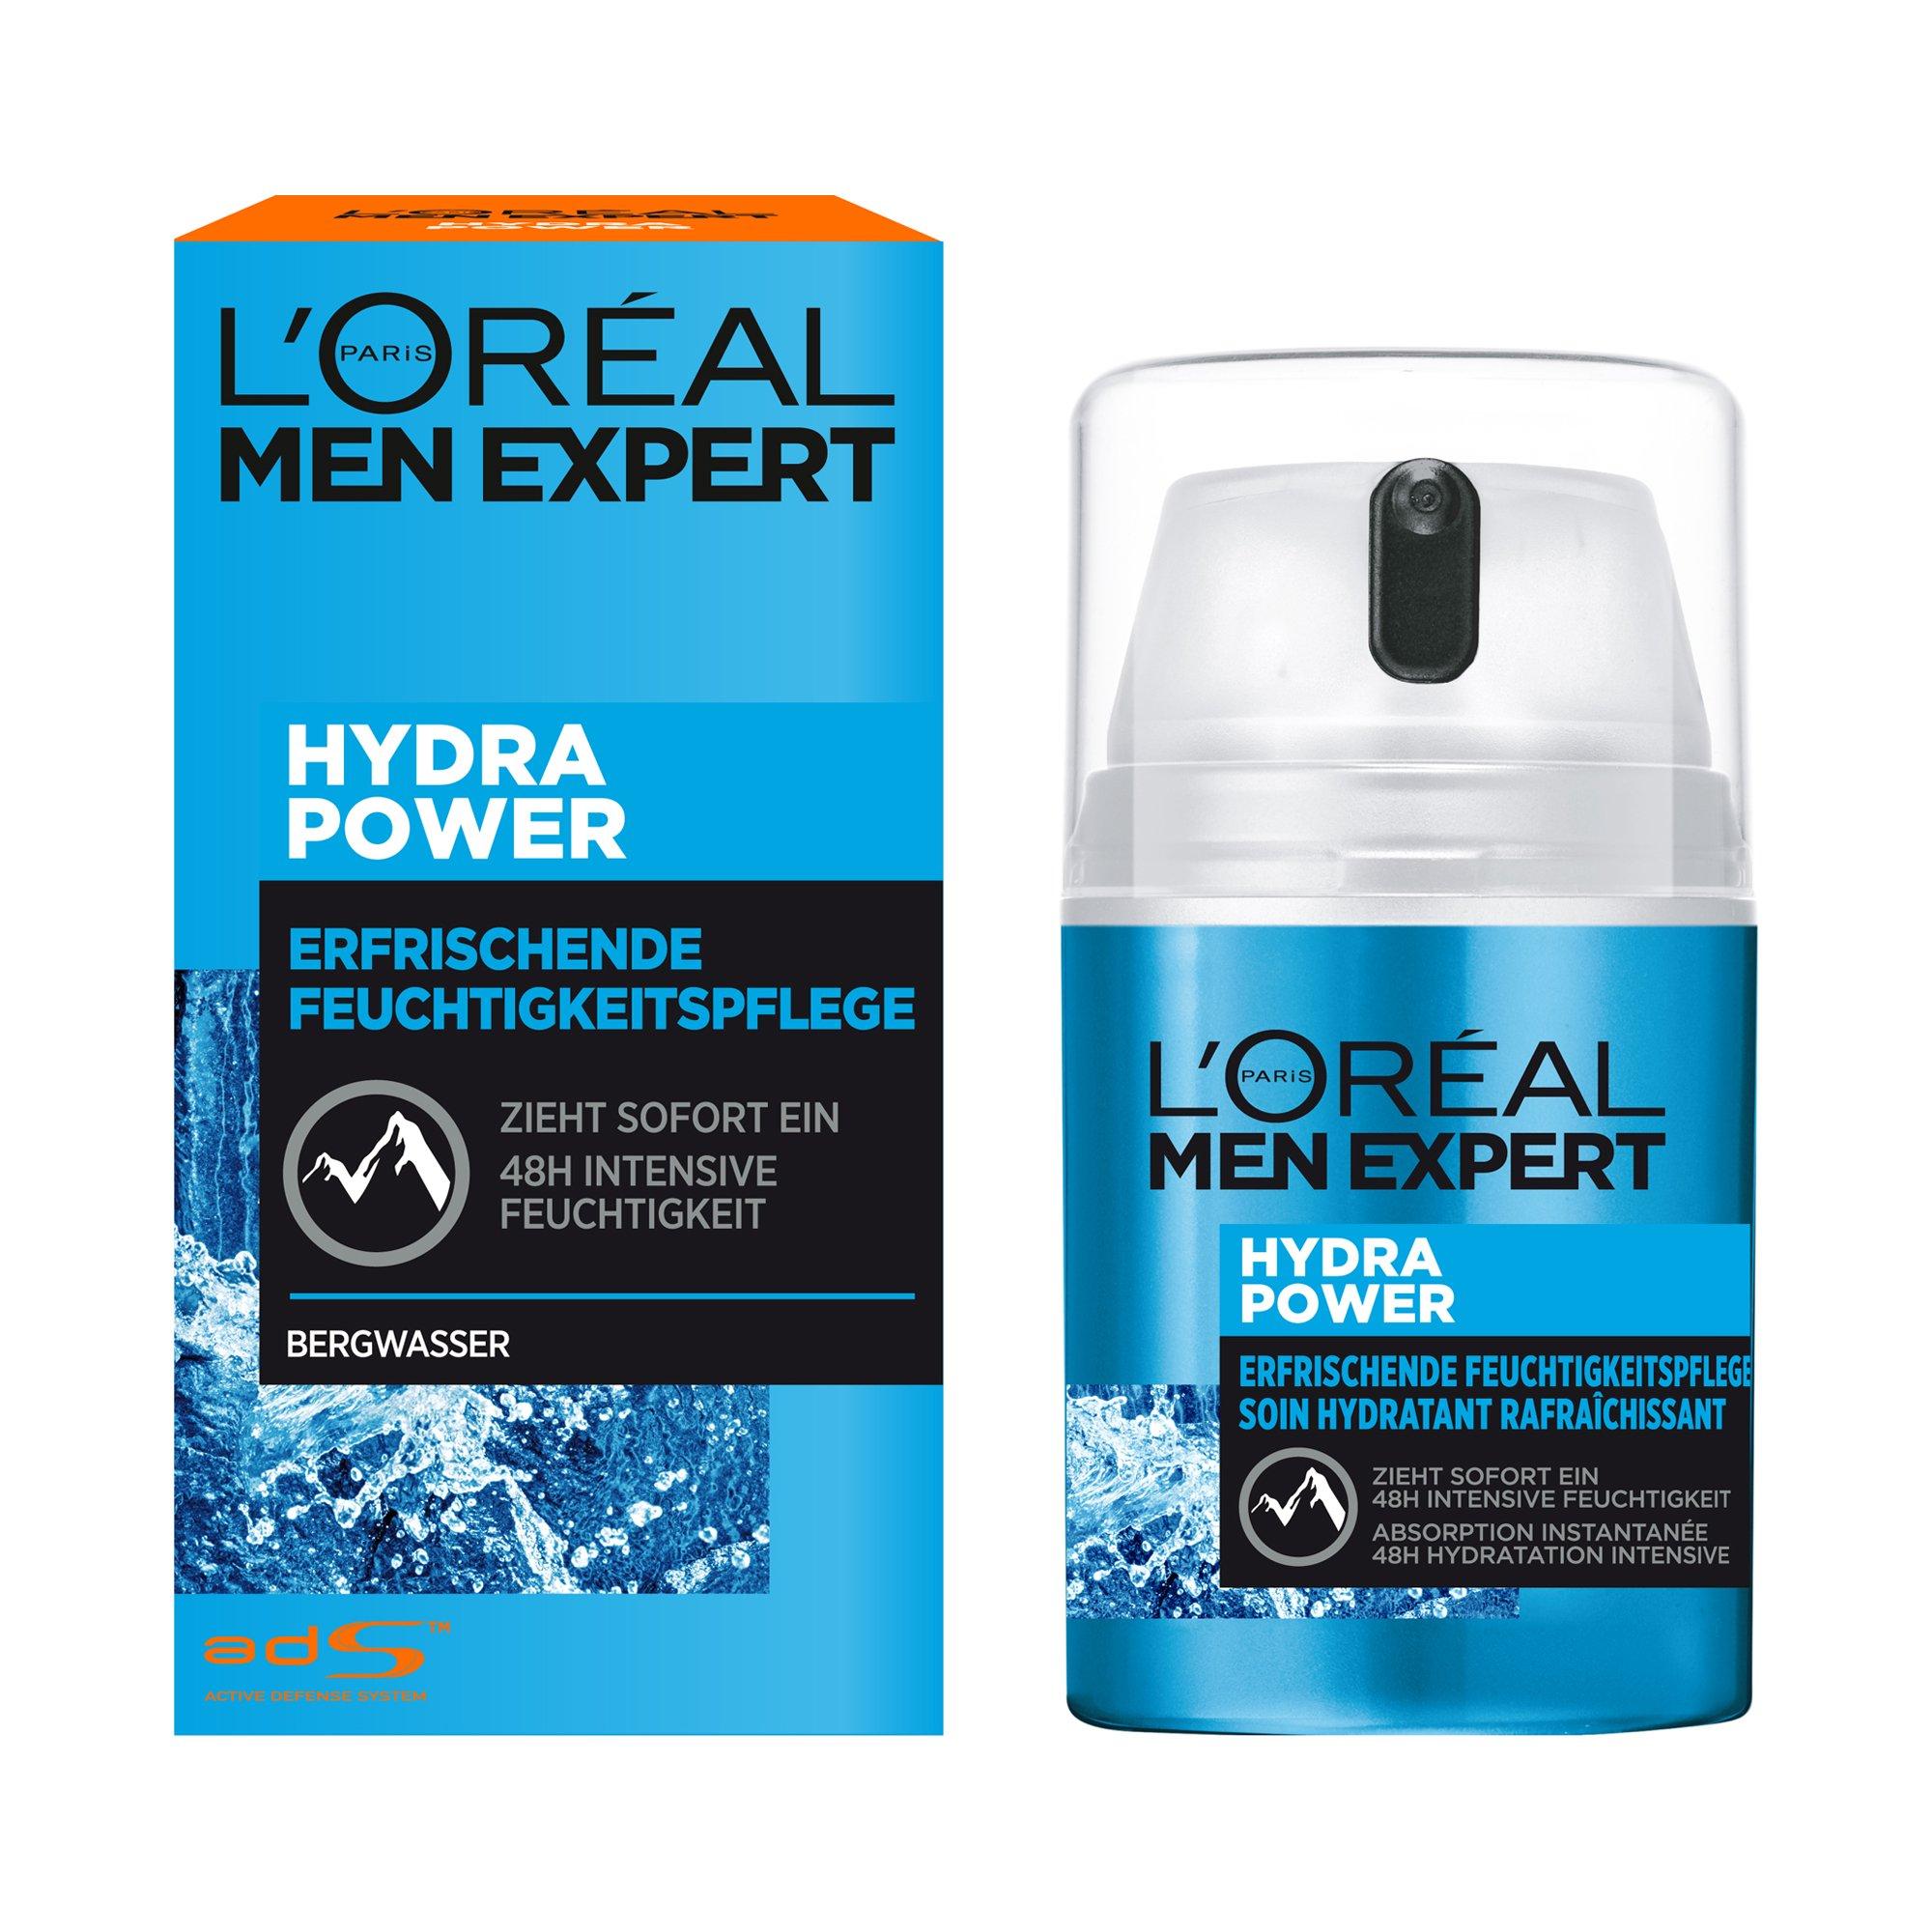 Image of MEN EXPERT Hydra power Men Expert Hydra Power Erfrischende Feuchtigkeitspflege - 50ml